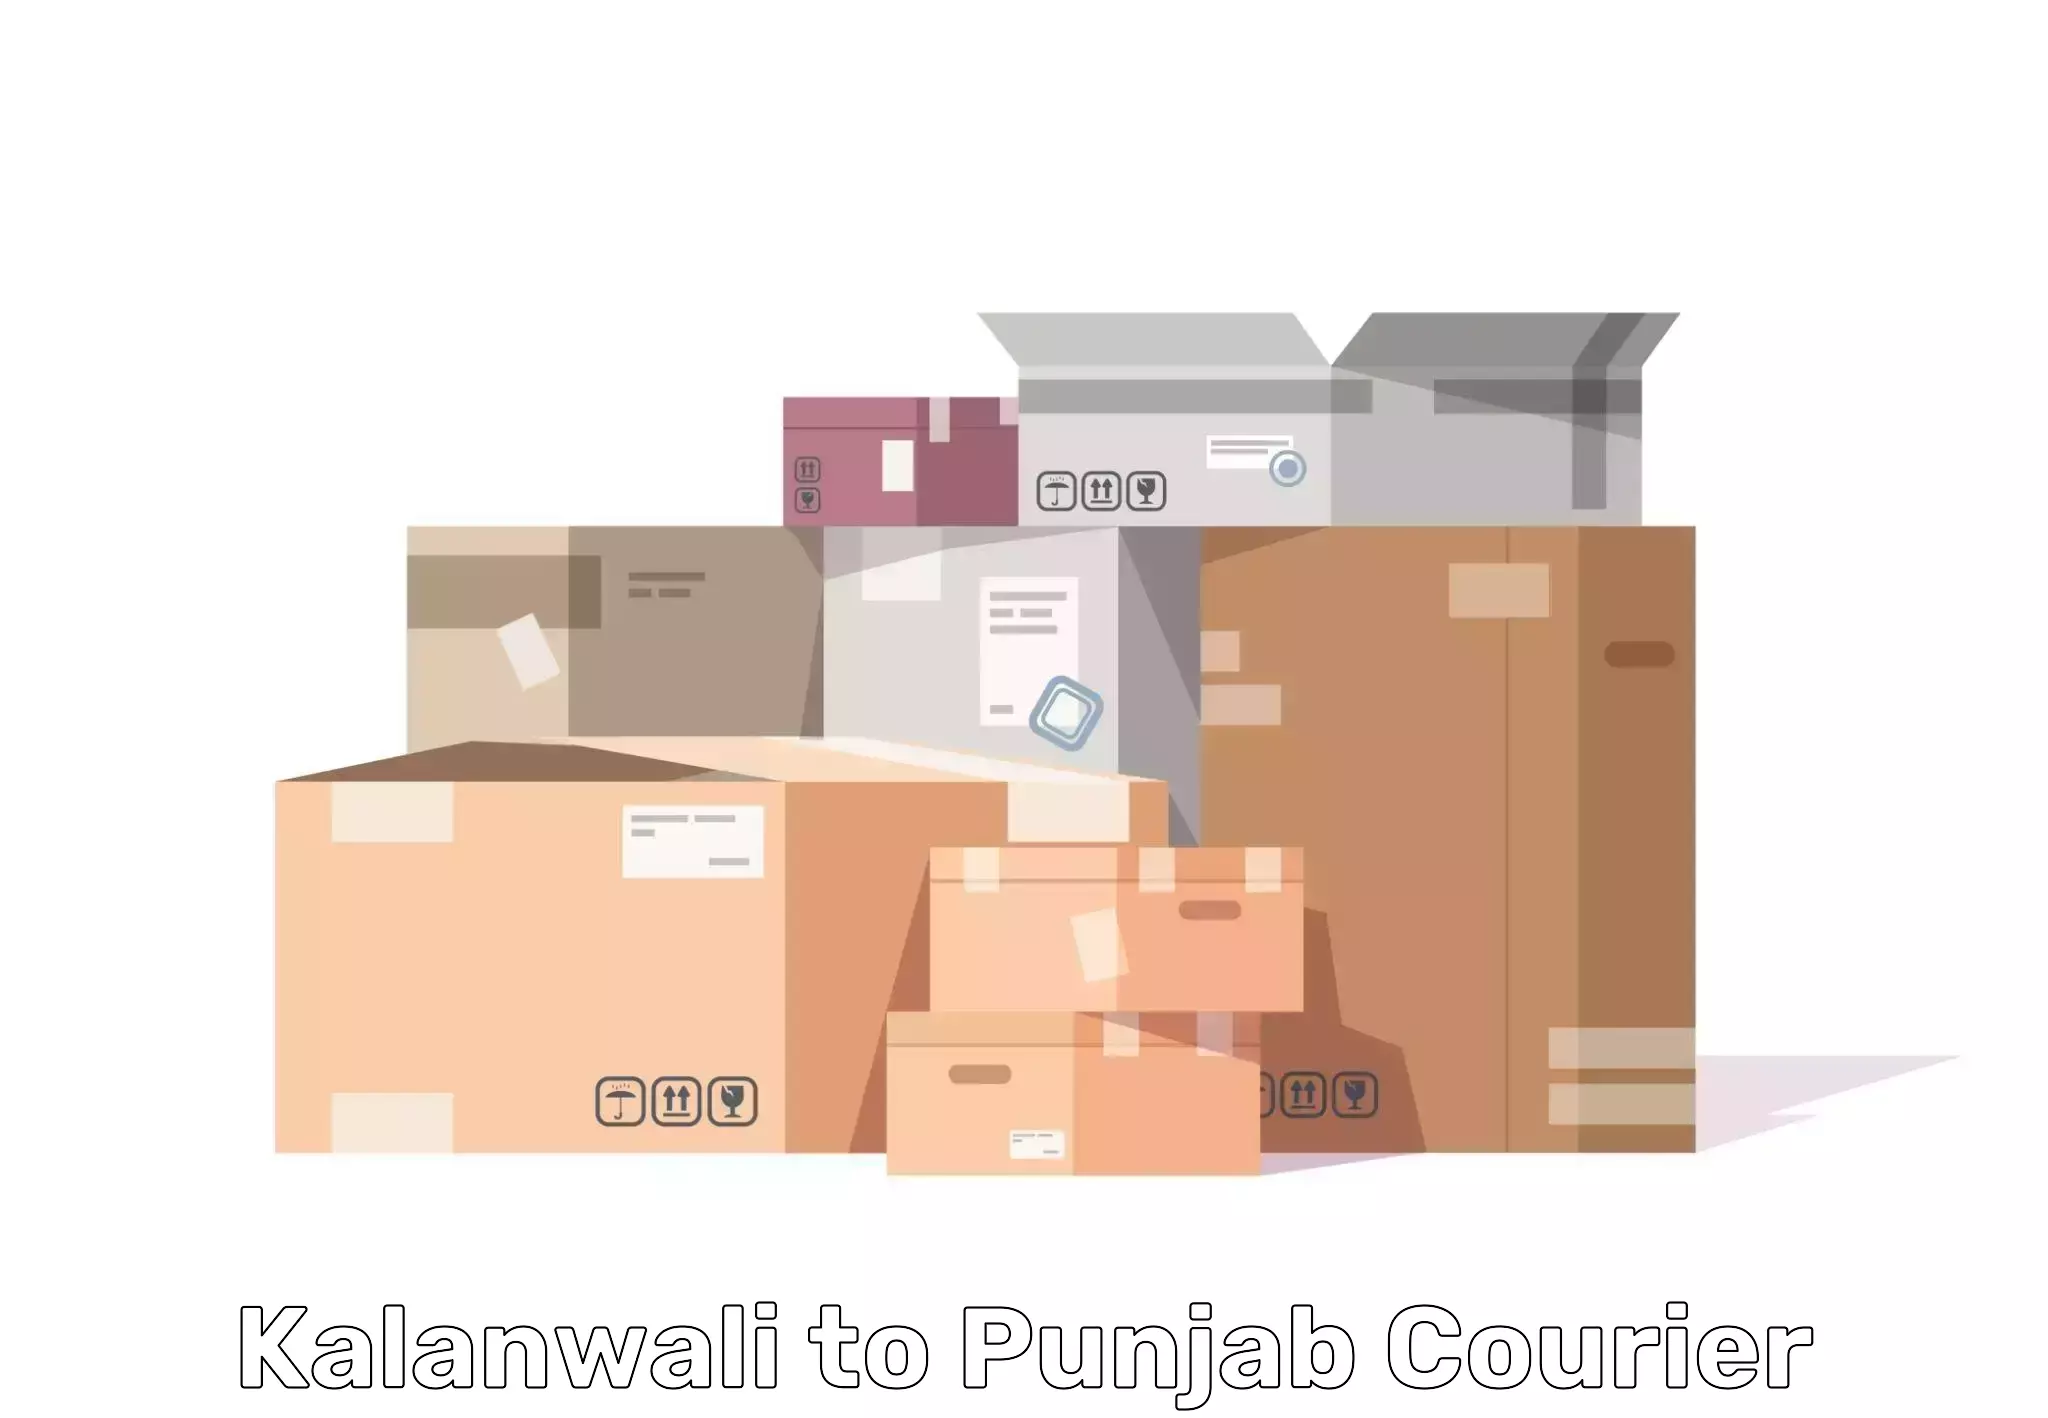 Comprehensive goods transport Kalanwali to Central University of Punjab Bathinda